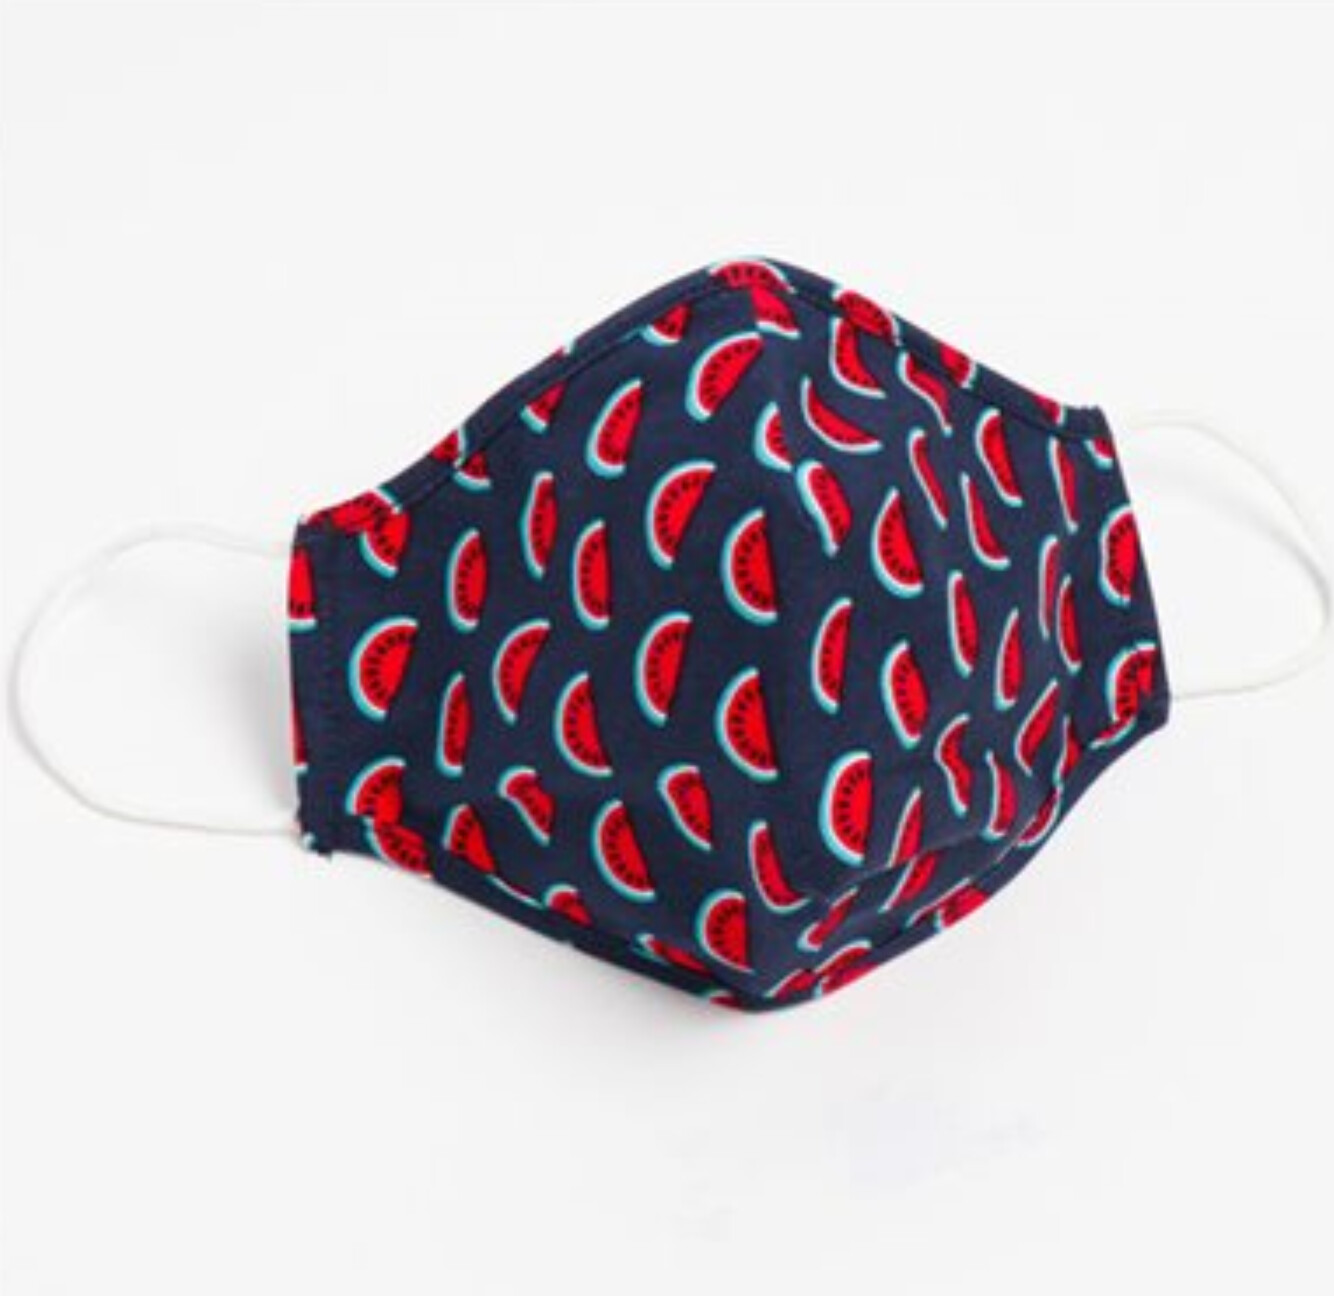 Masques lavables et réutilisables en tissu non-médical pour enfant (100% Coton) rouge et bleu (Paquet de 5) de Hörst